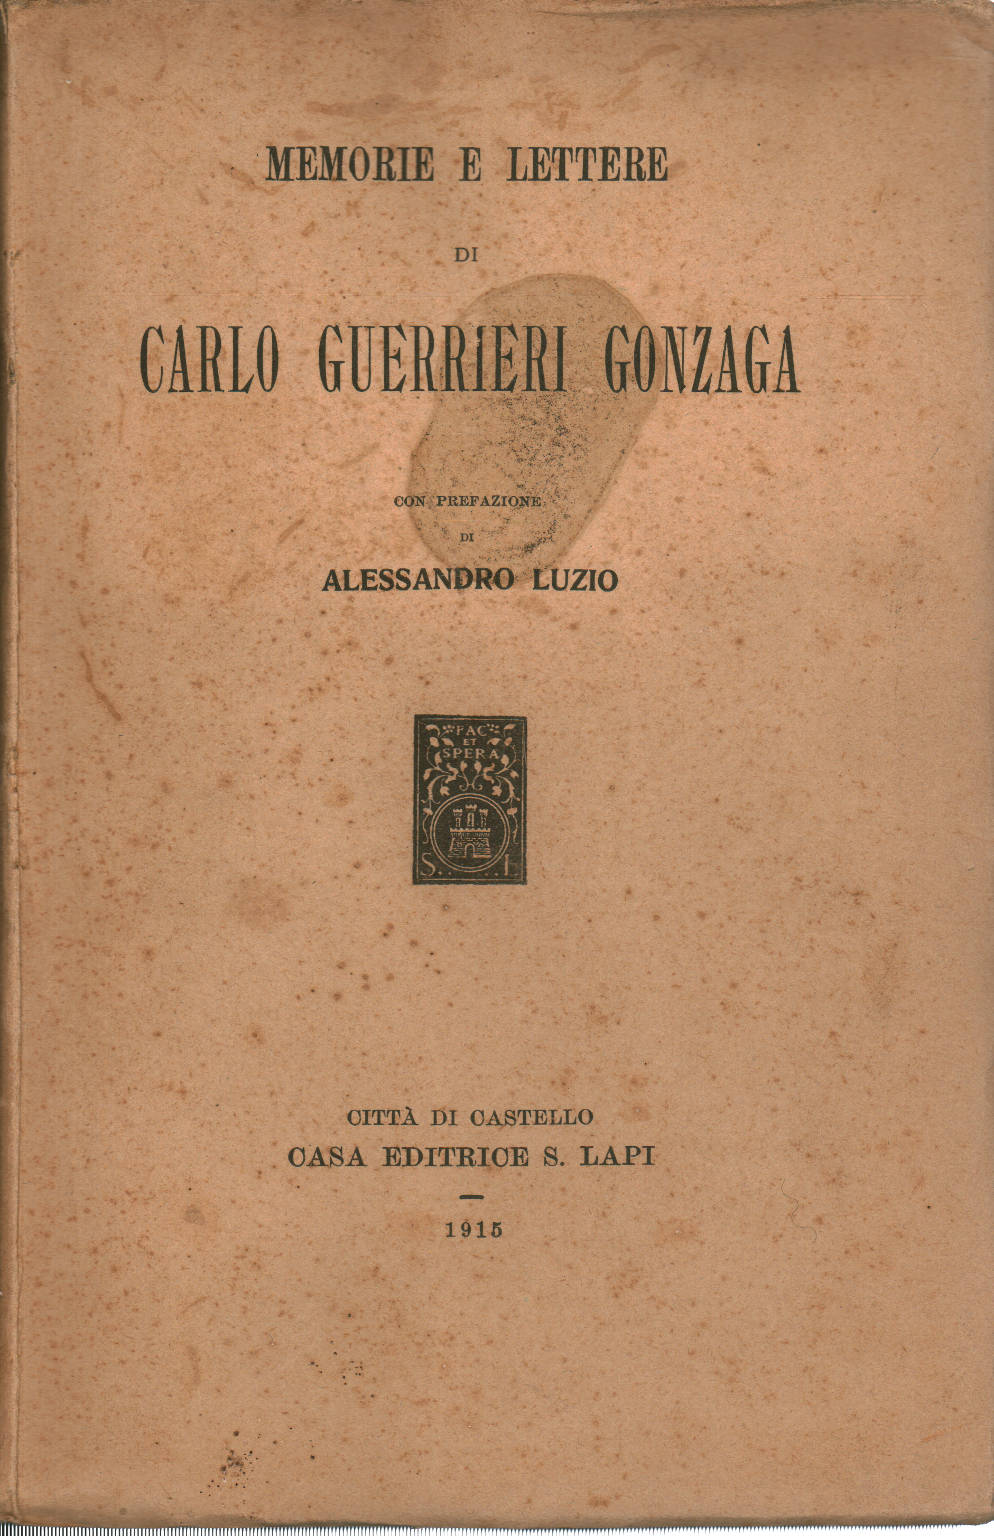 Memorie e lettere di Carlo Guerrieri Gonzaga, Carlo Guerrieri Gonzaga